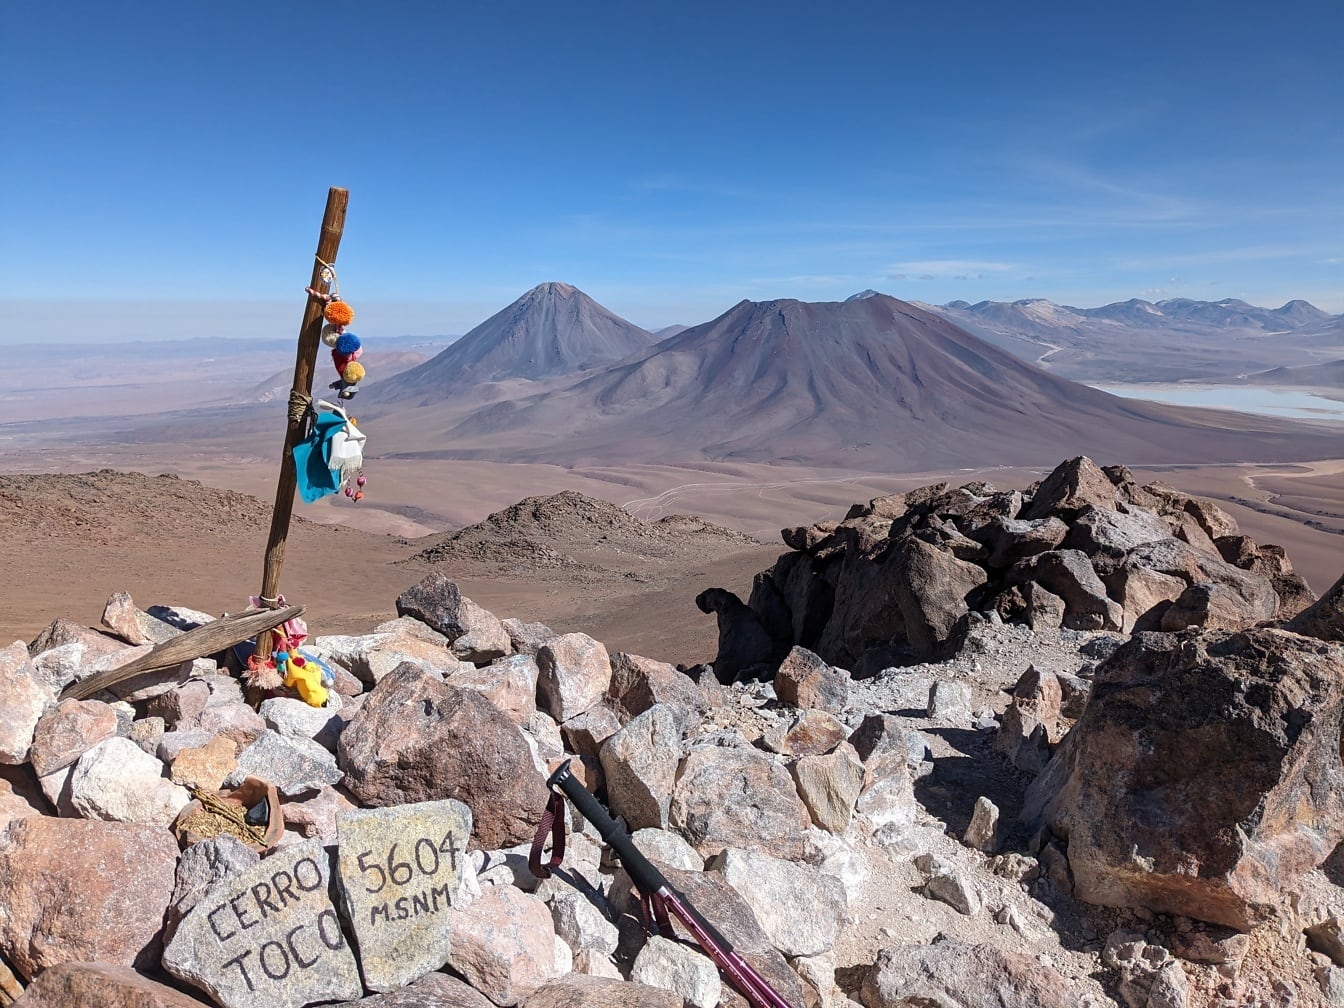 Vetta del Cerro Toco in Cile a 5604 metri sul livello del mare